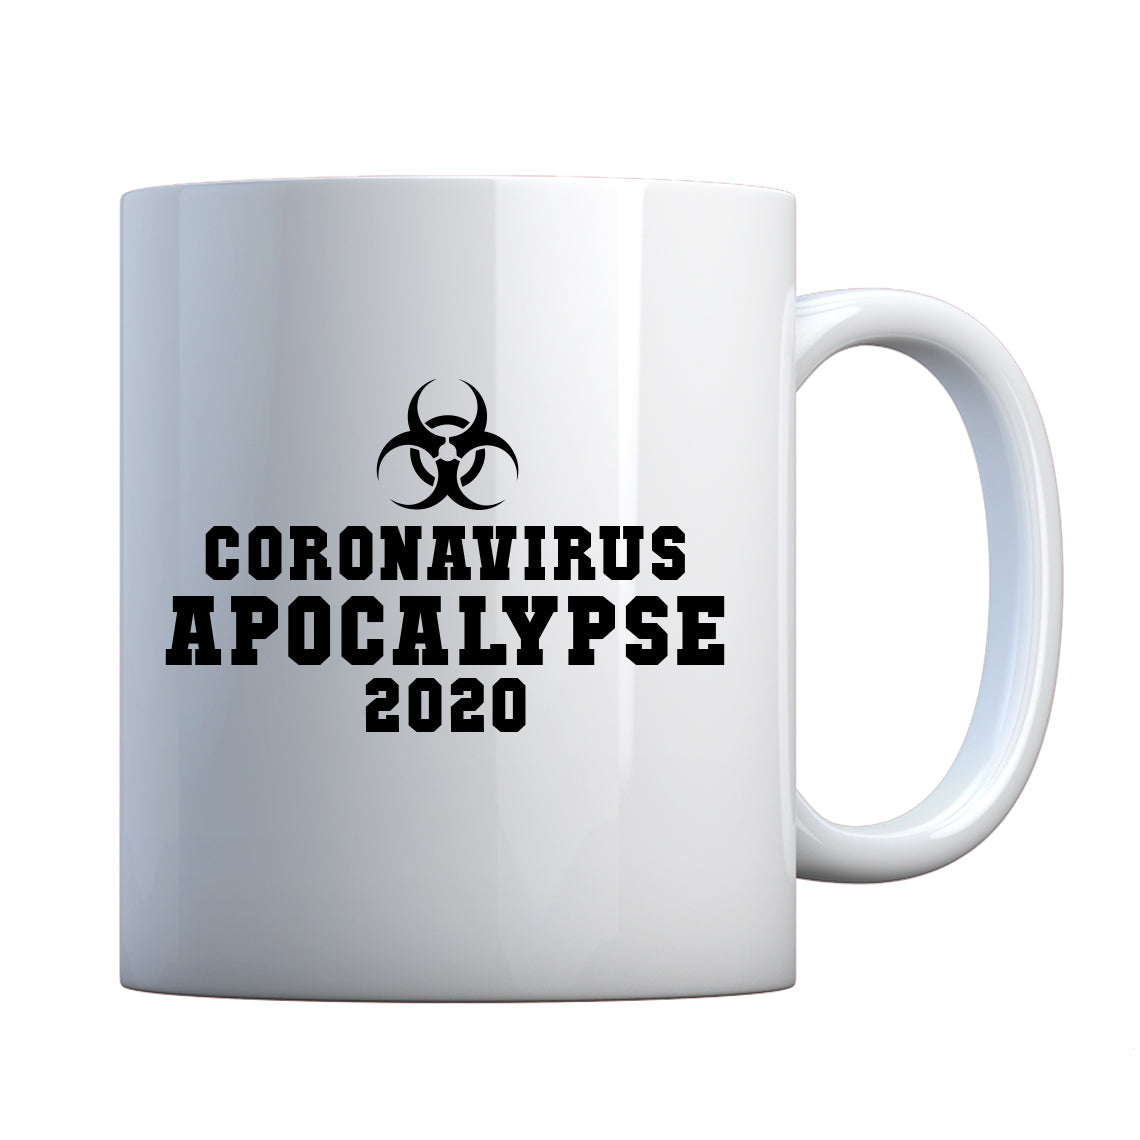 Coronavirus Apocalypse 2020 Ceramic Gift Mug